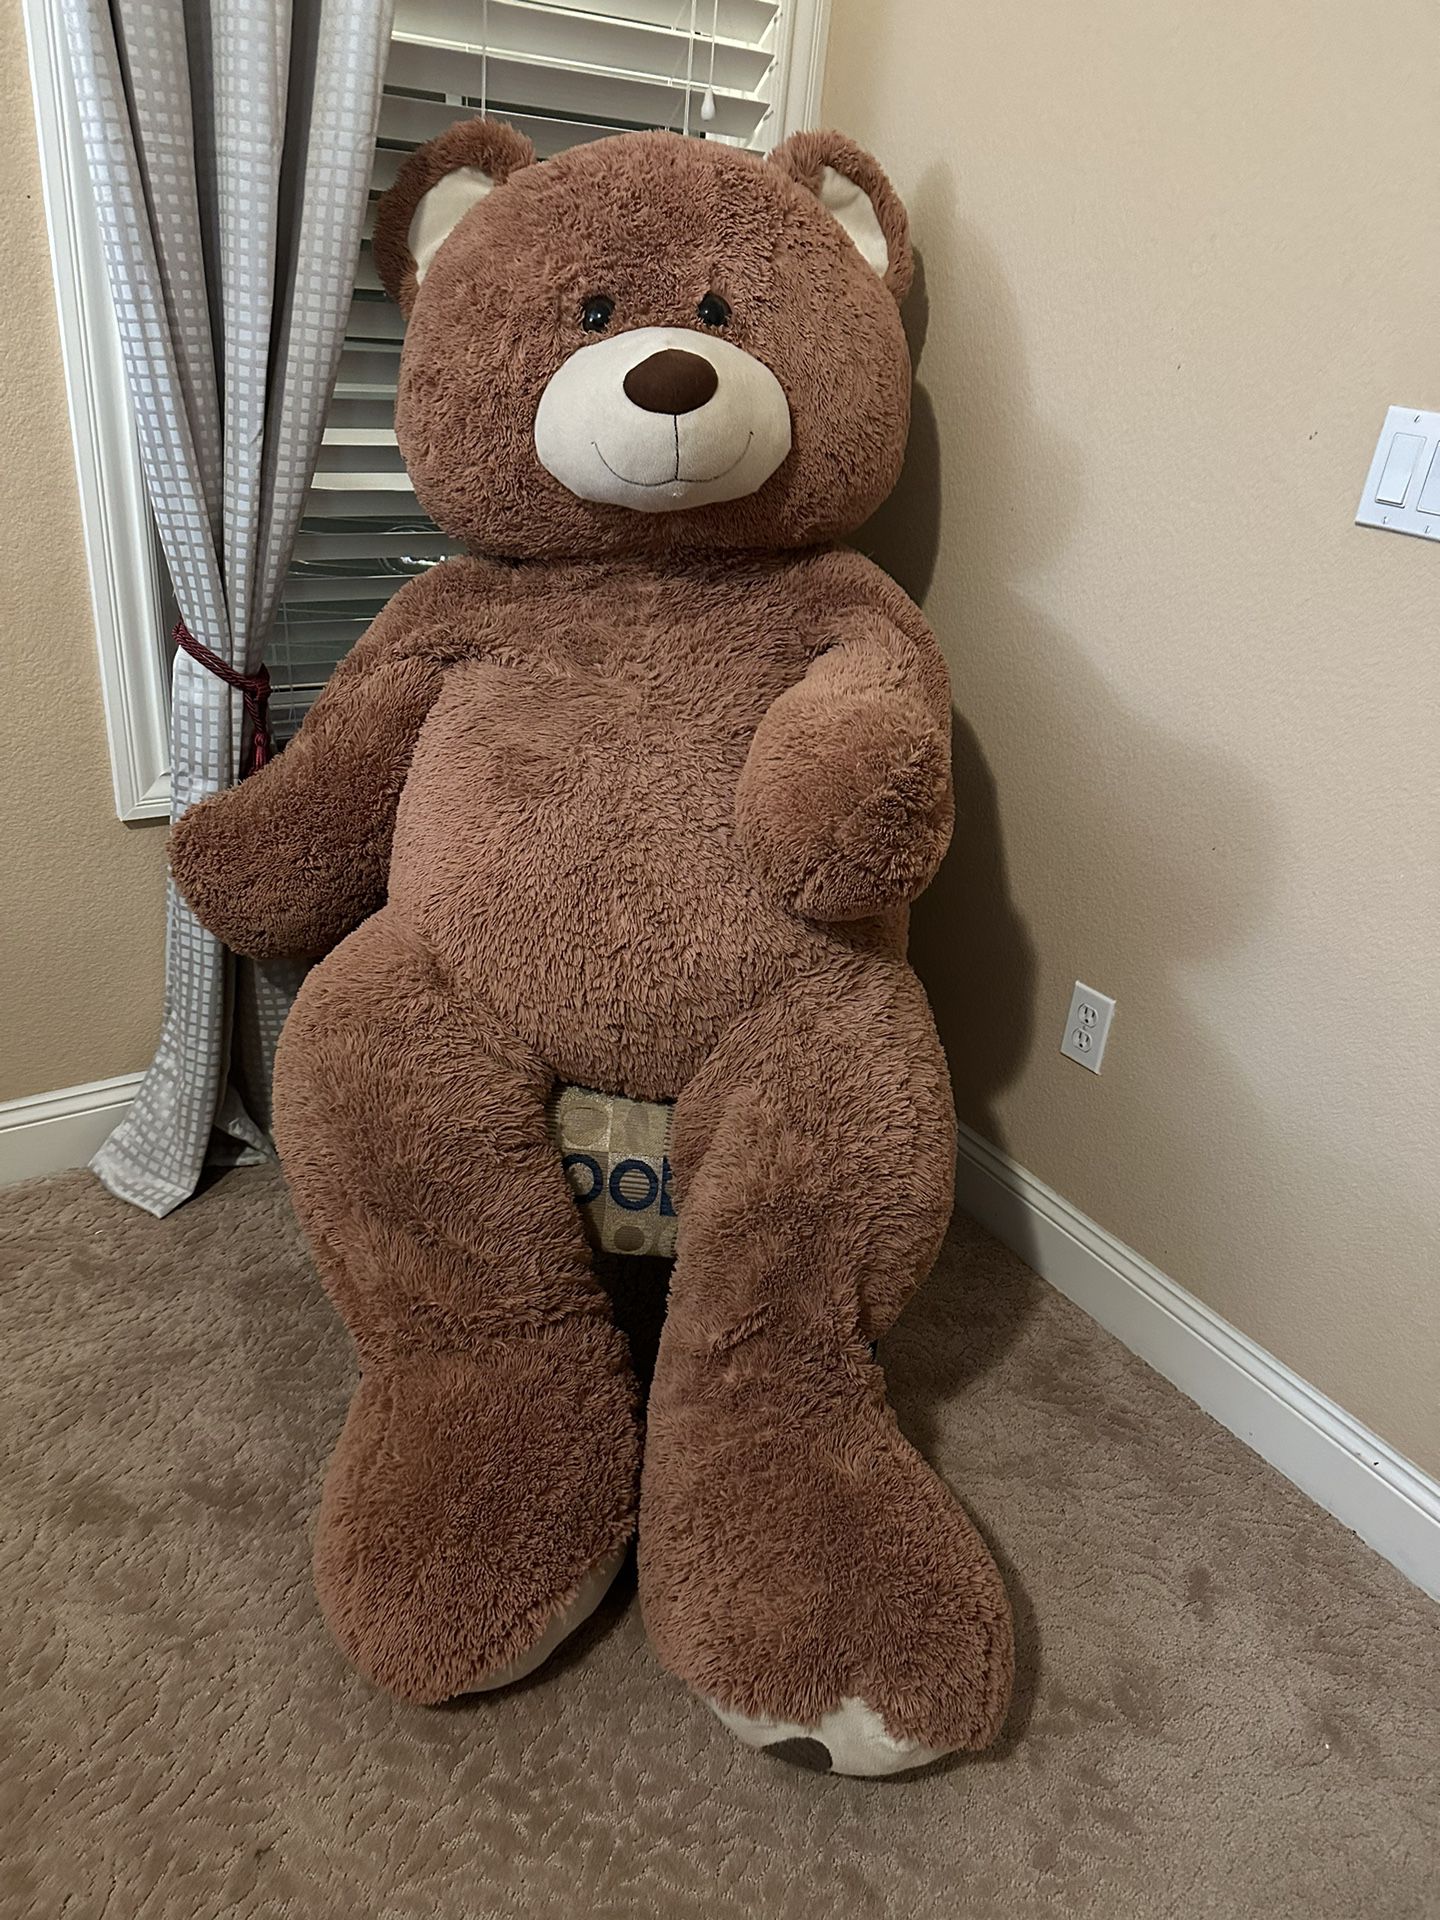 Huge Teddy Bear From Costco 